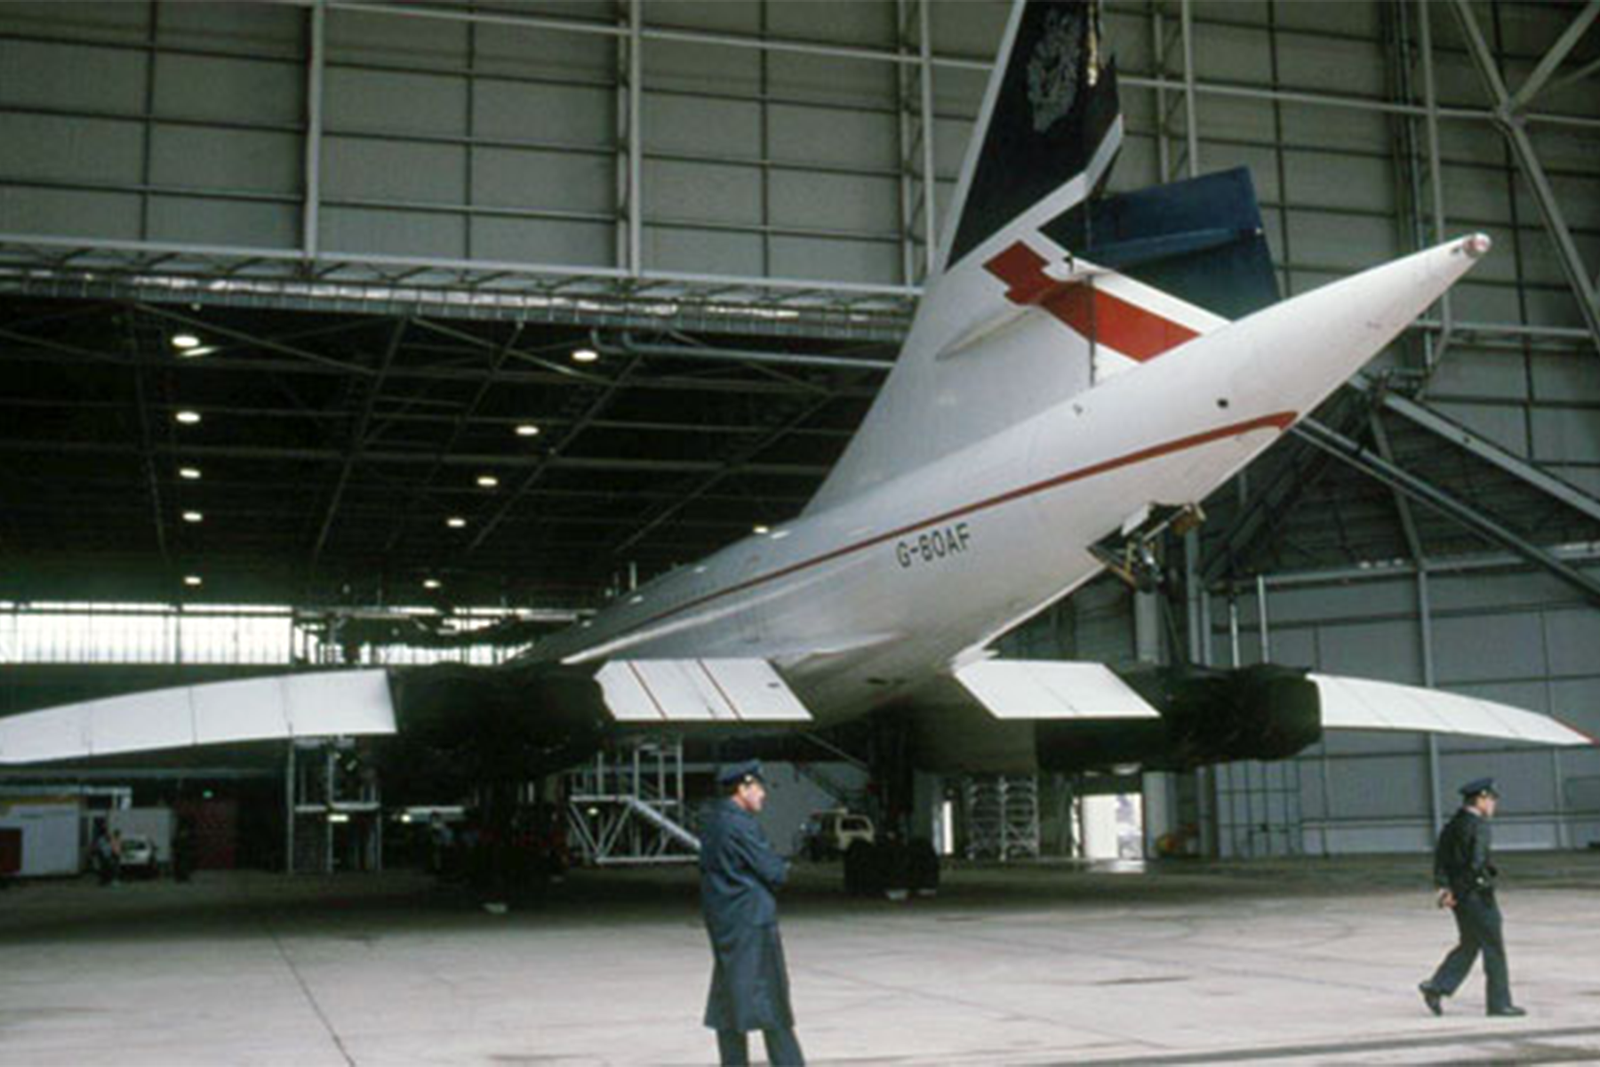 El Concorde afectado fue reparado en uno de los hangares de Qantas del aeropuerto Kingsford Smith de Sídney. Foto: Ken Watson via Airways Museum